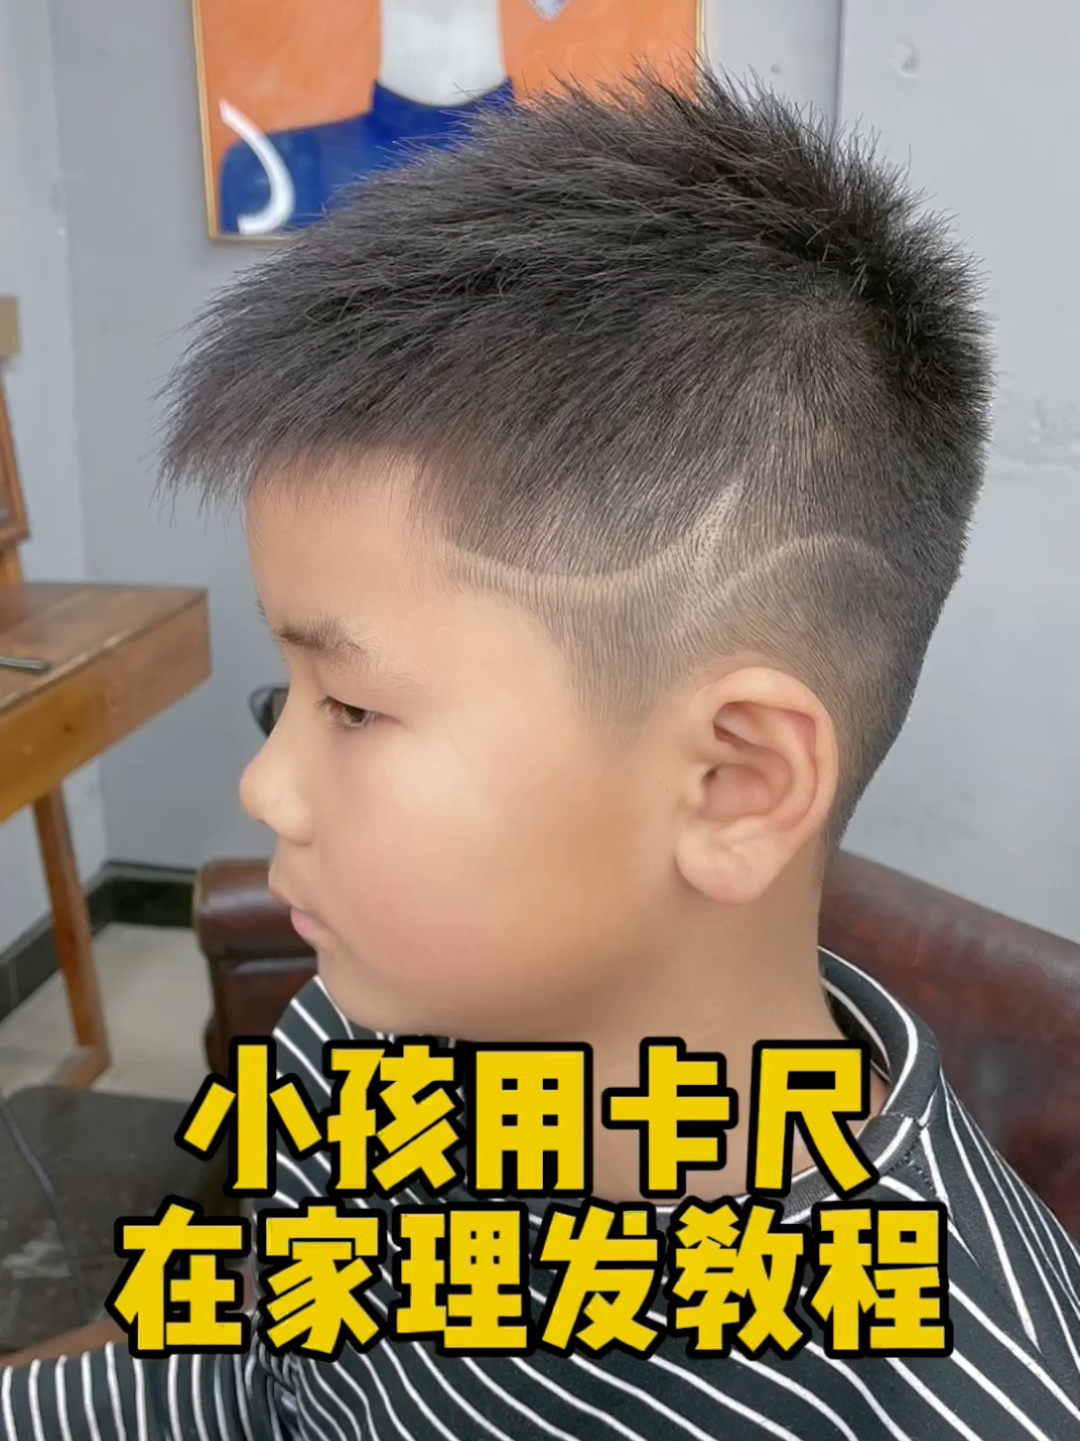 理发店的理发师给漂亮的金发男孩做发型图片下载 - 觅知网